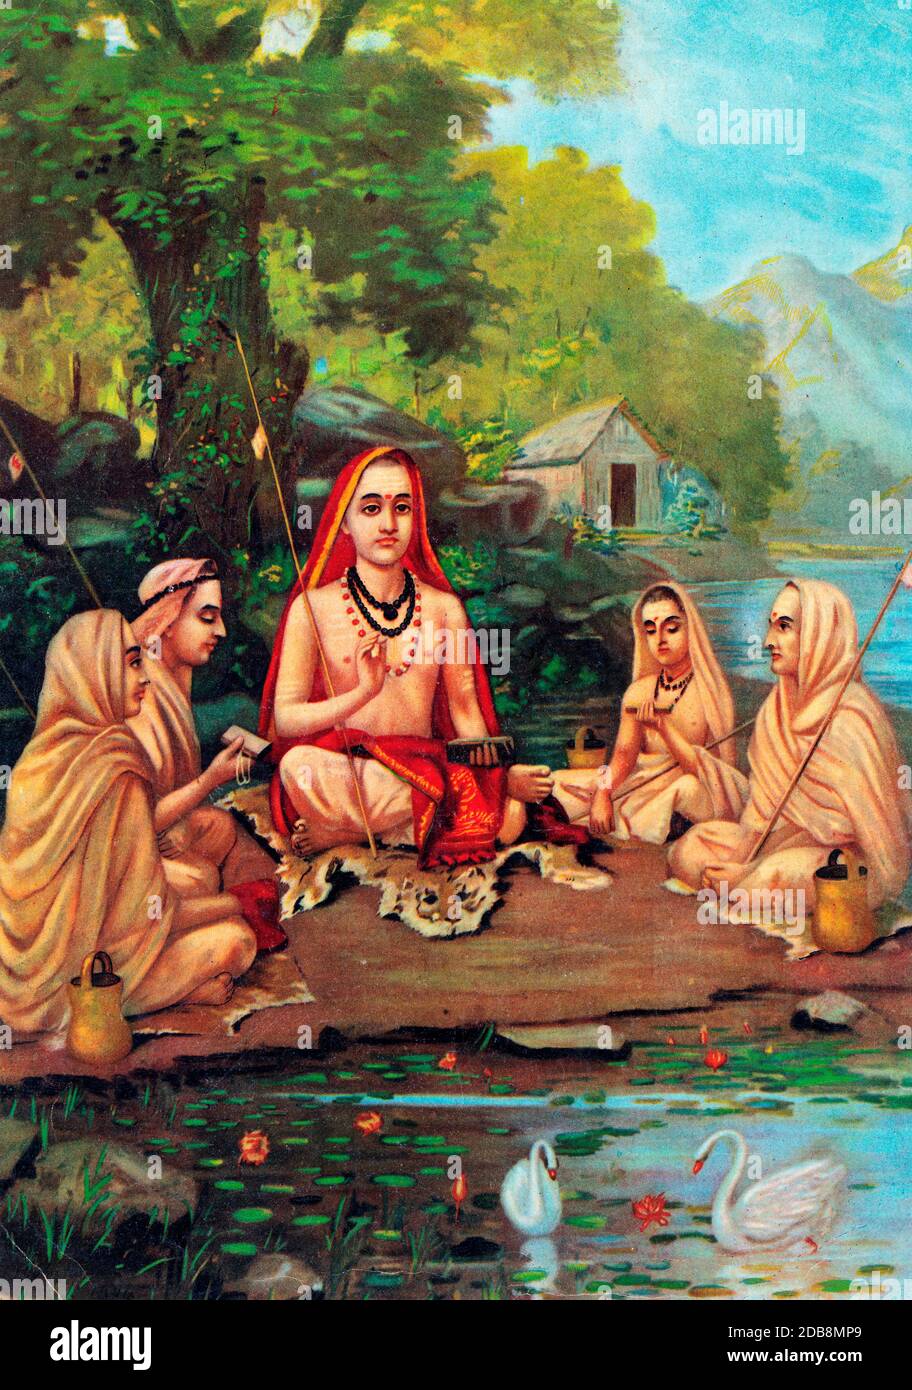 ADI Shankara (788-820), fondateur d'Advaita Vedanta, avec des disciples, par Raja Ravi Varma, 1904 Banque D'Images